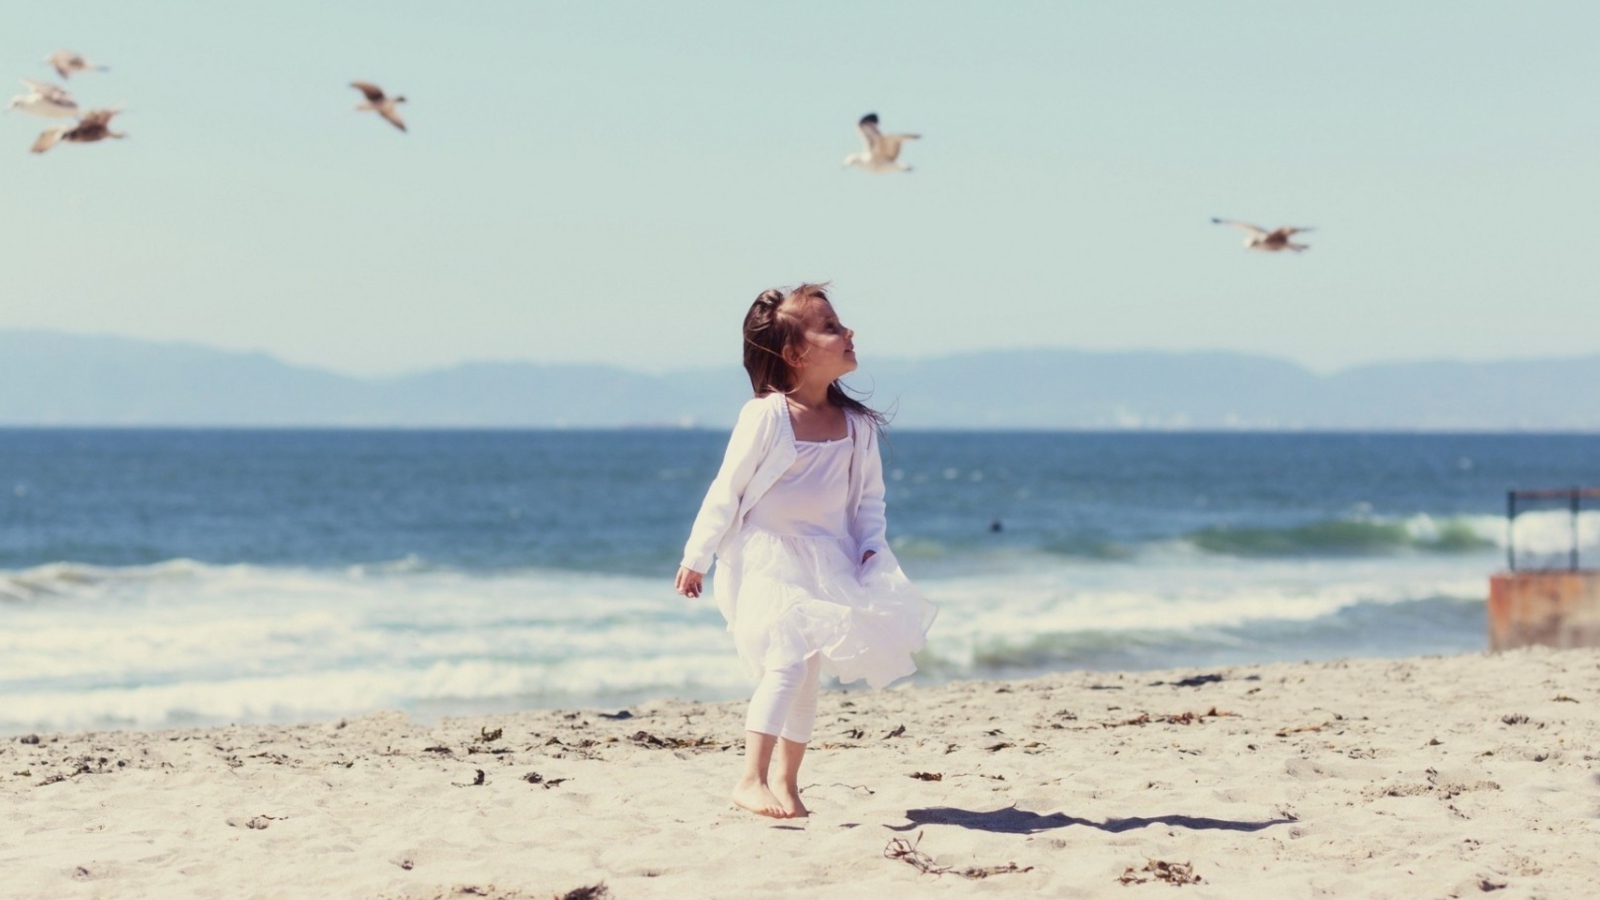 Das Little Girl And Seagulls On Beach Wallpaper 1600x900